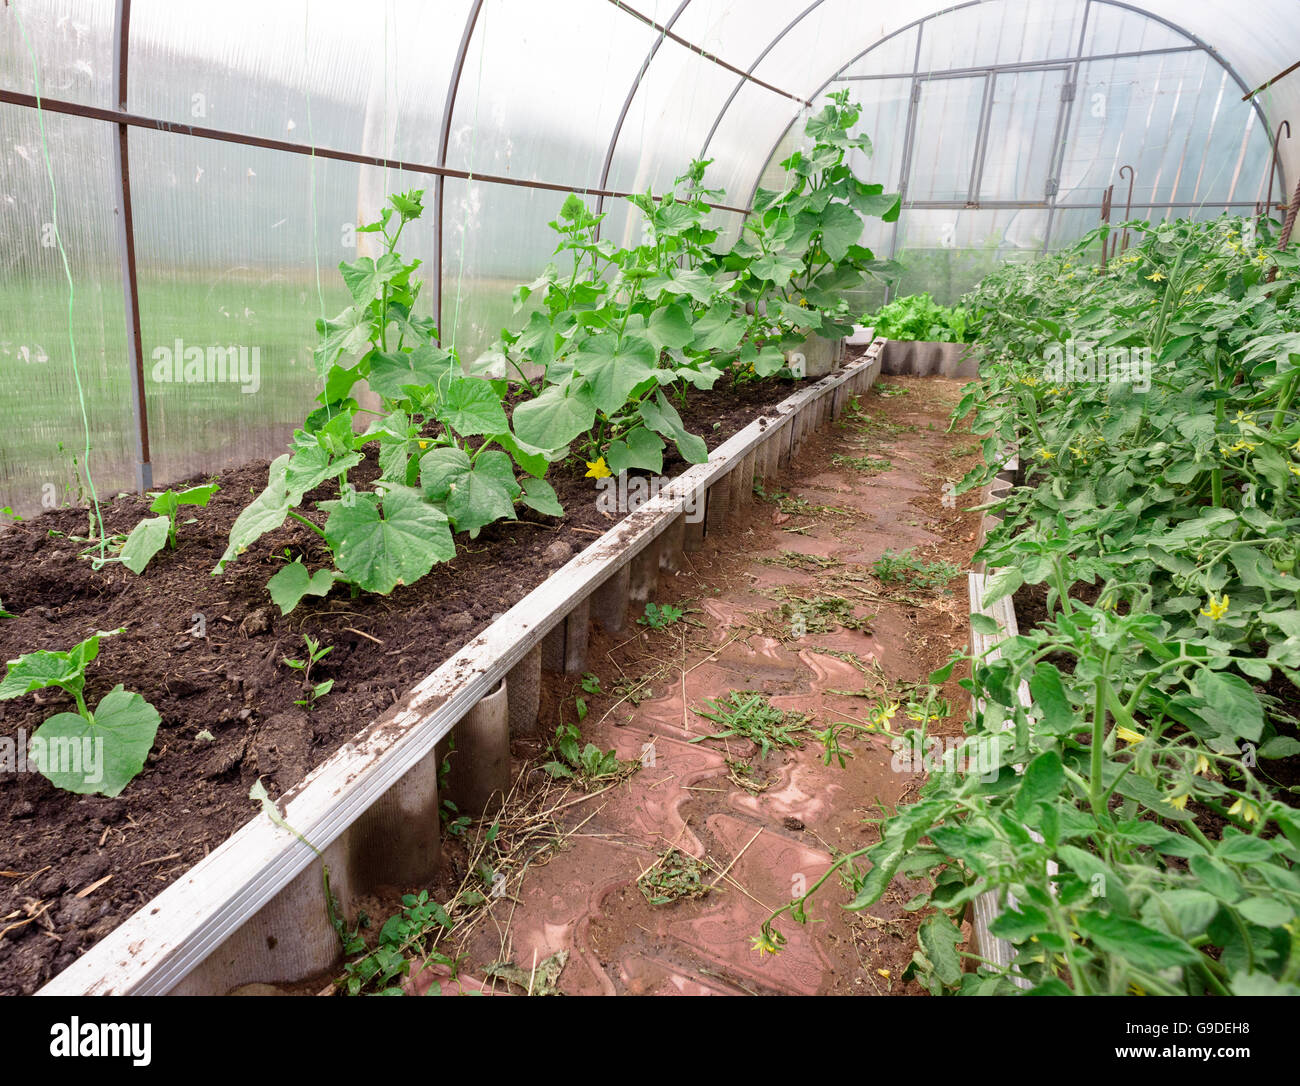 Gurken und Tomaten wachsen in ein kleines Gemüse Garten Gewächshaus  Stockfotografie - Alamy